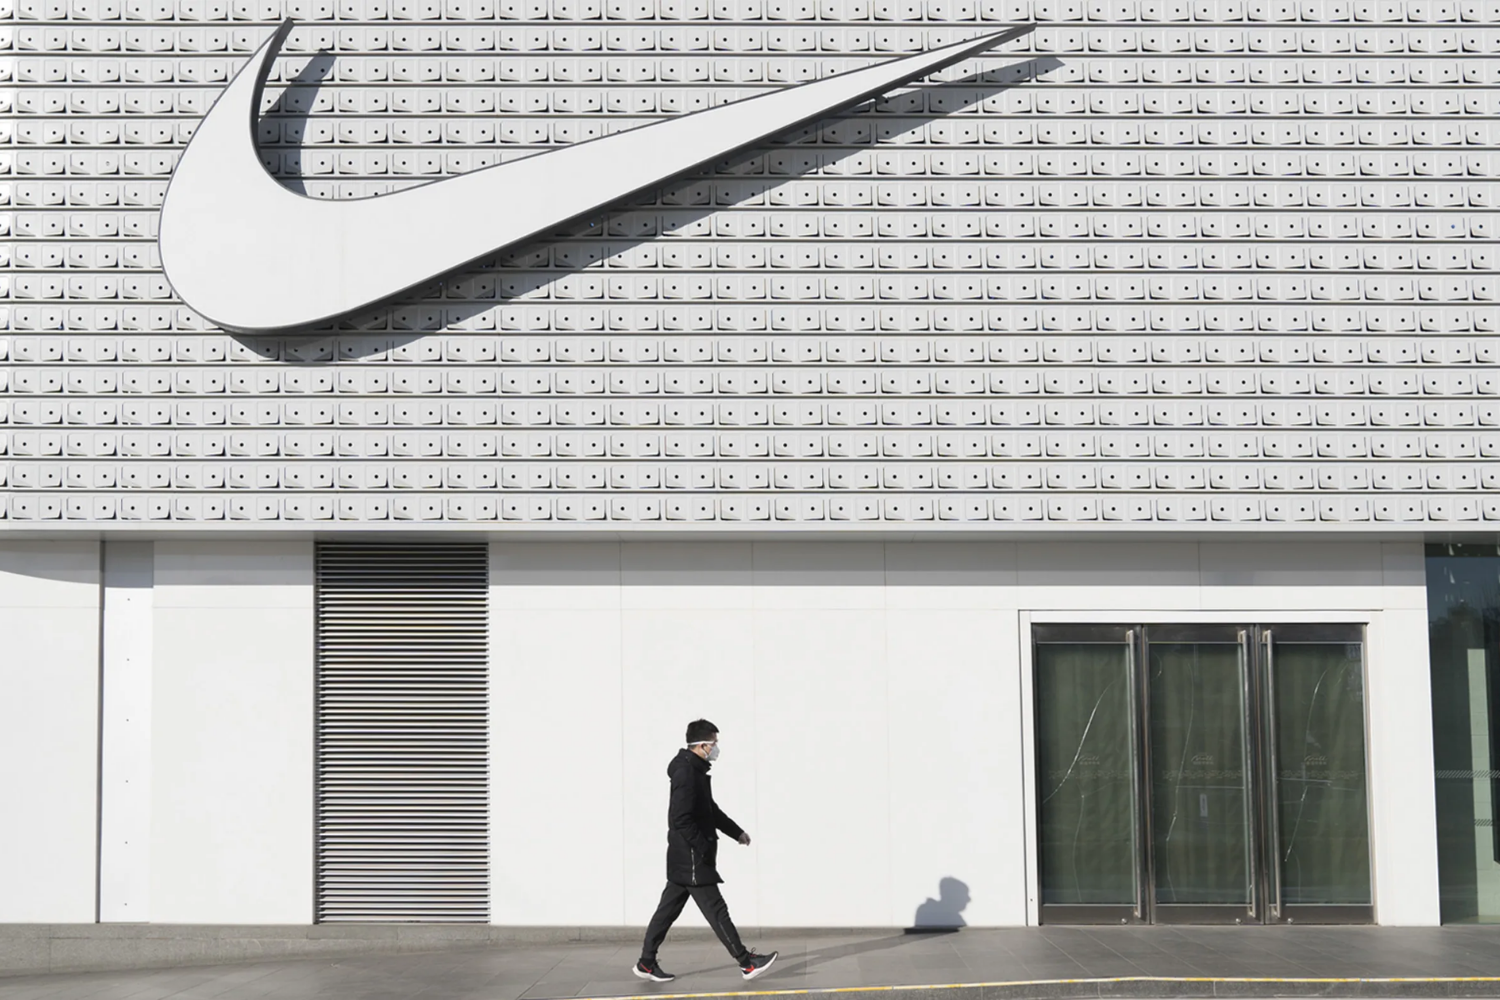 Nike bespreekt doelen en uitdagingen in tweede kwartaal 2022 meeting